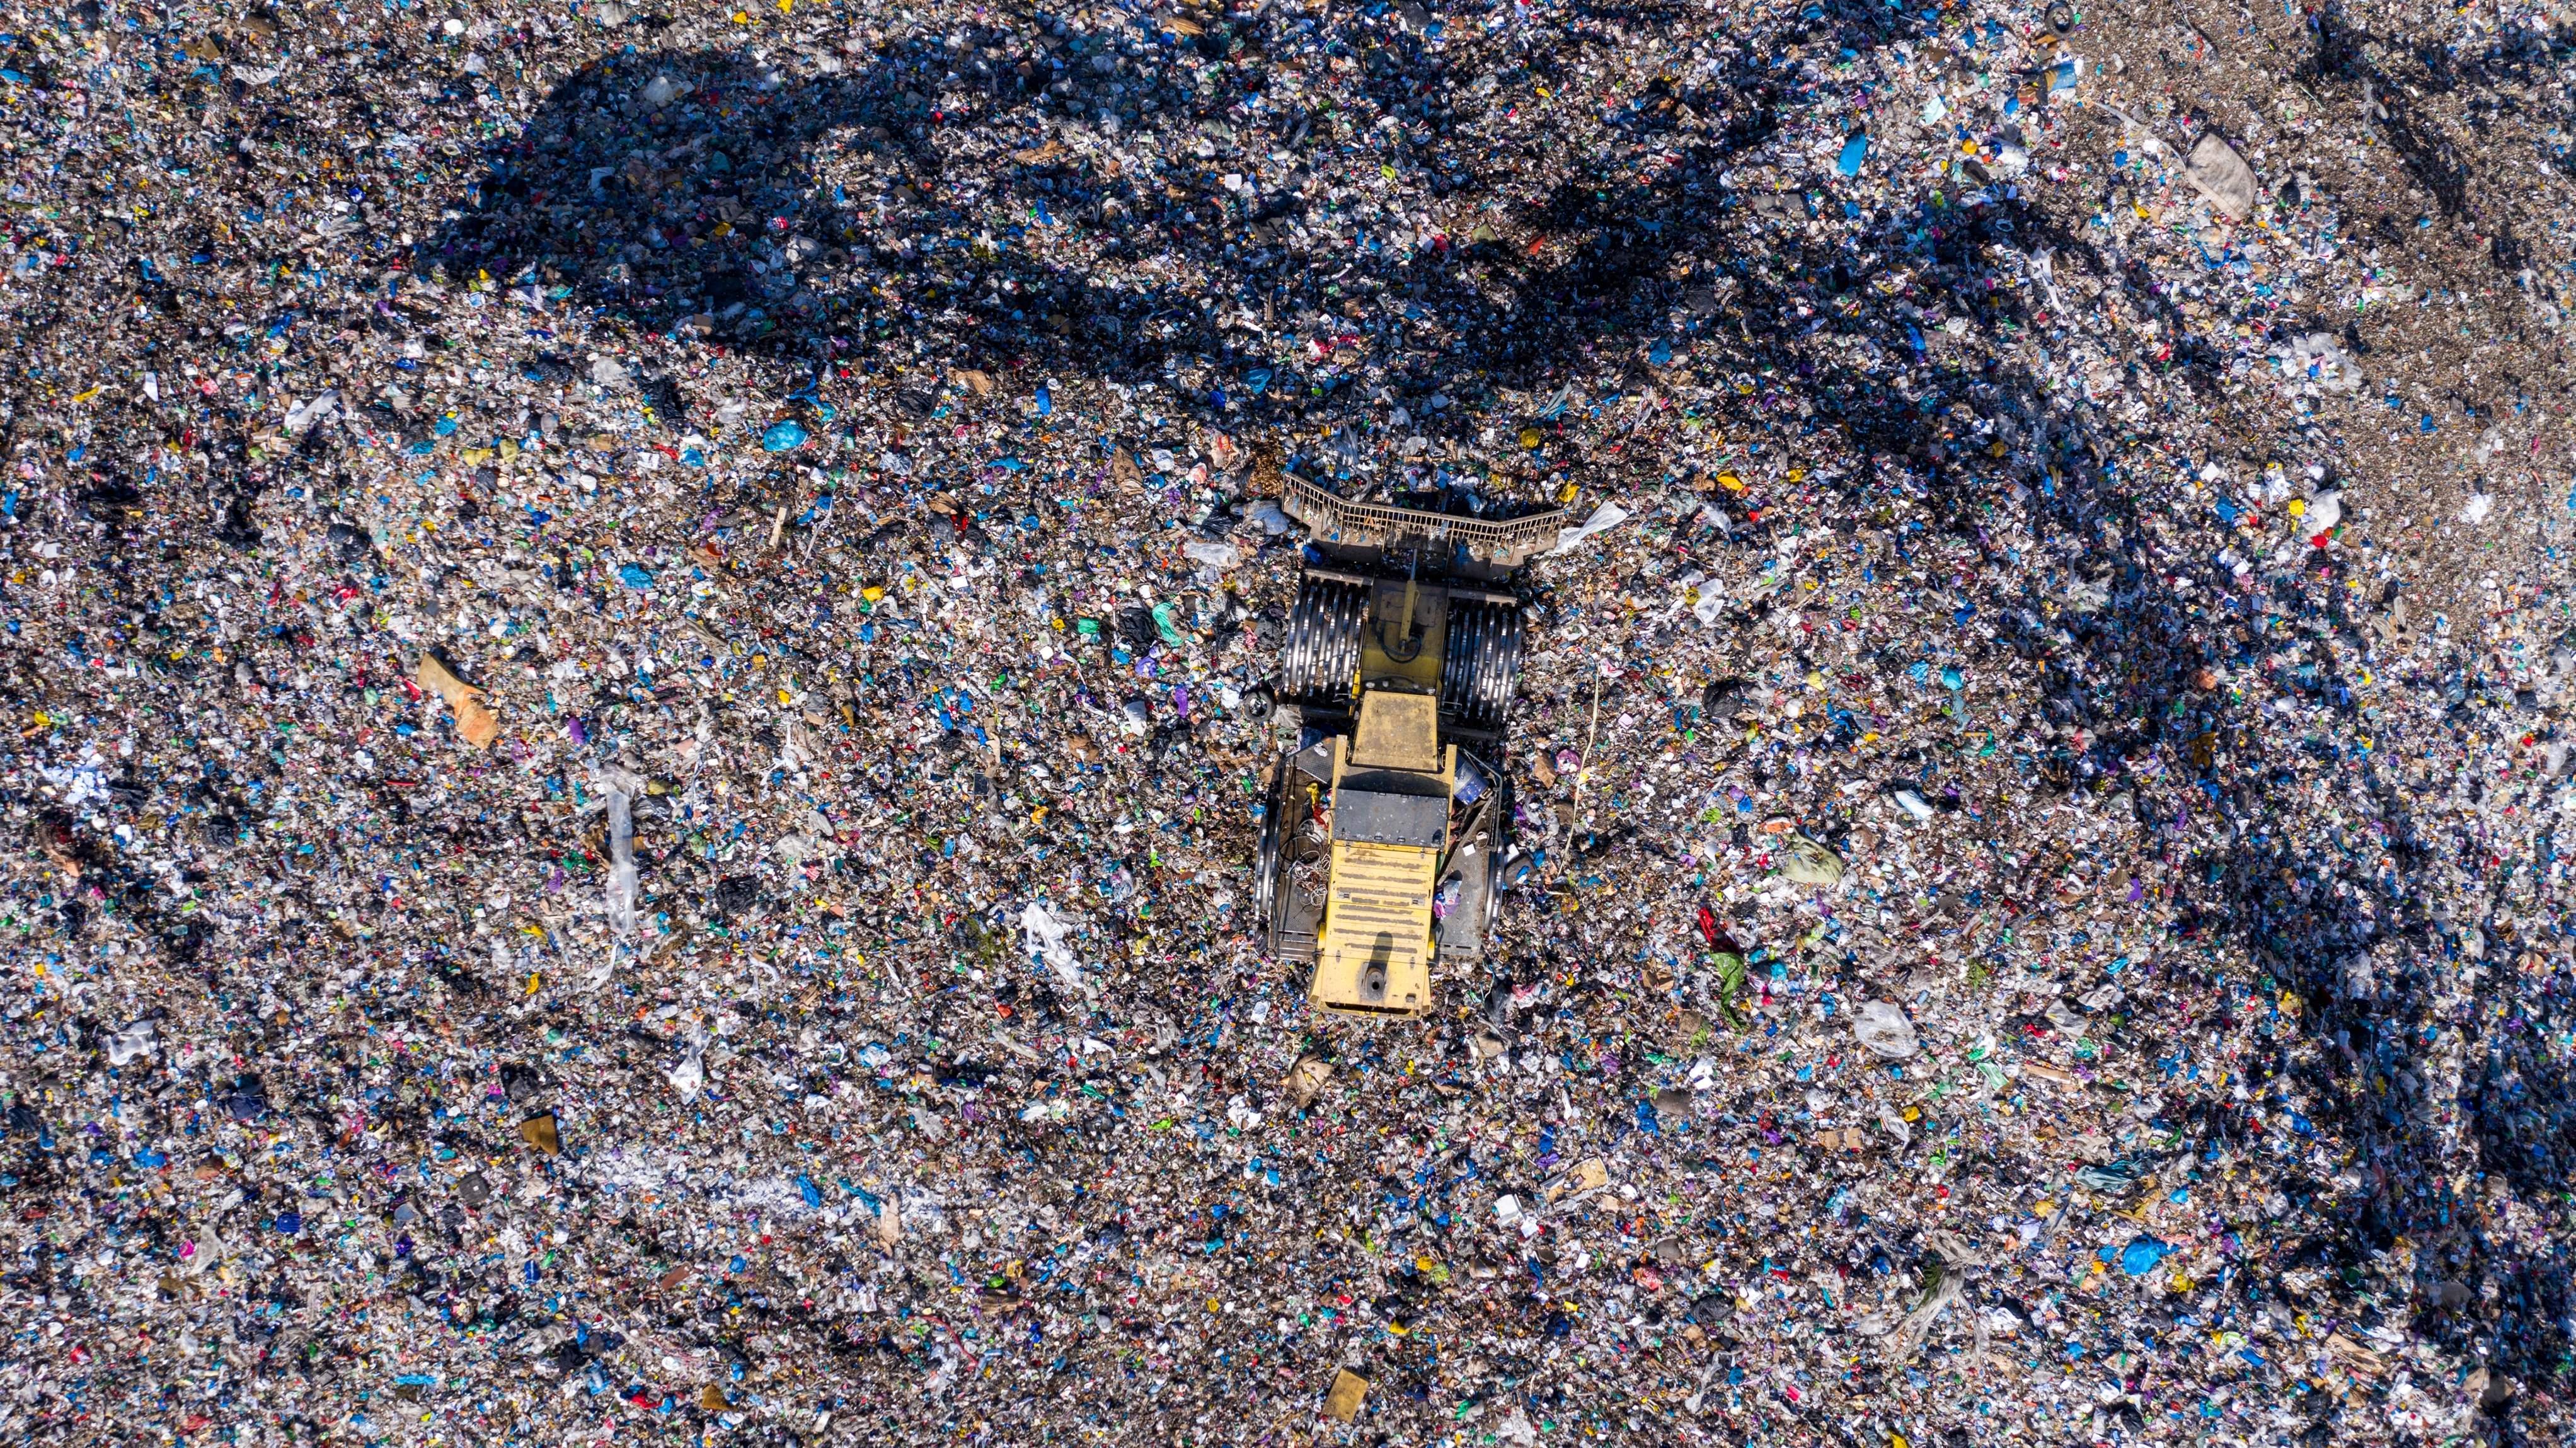 Els 5 abocadors globals més exagerats: estem creant nova geografia a base d'escombraries